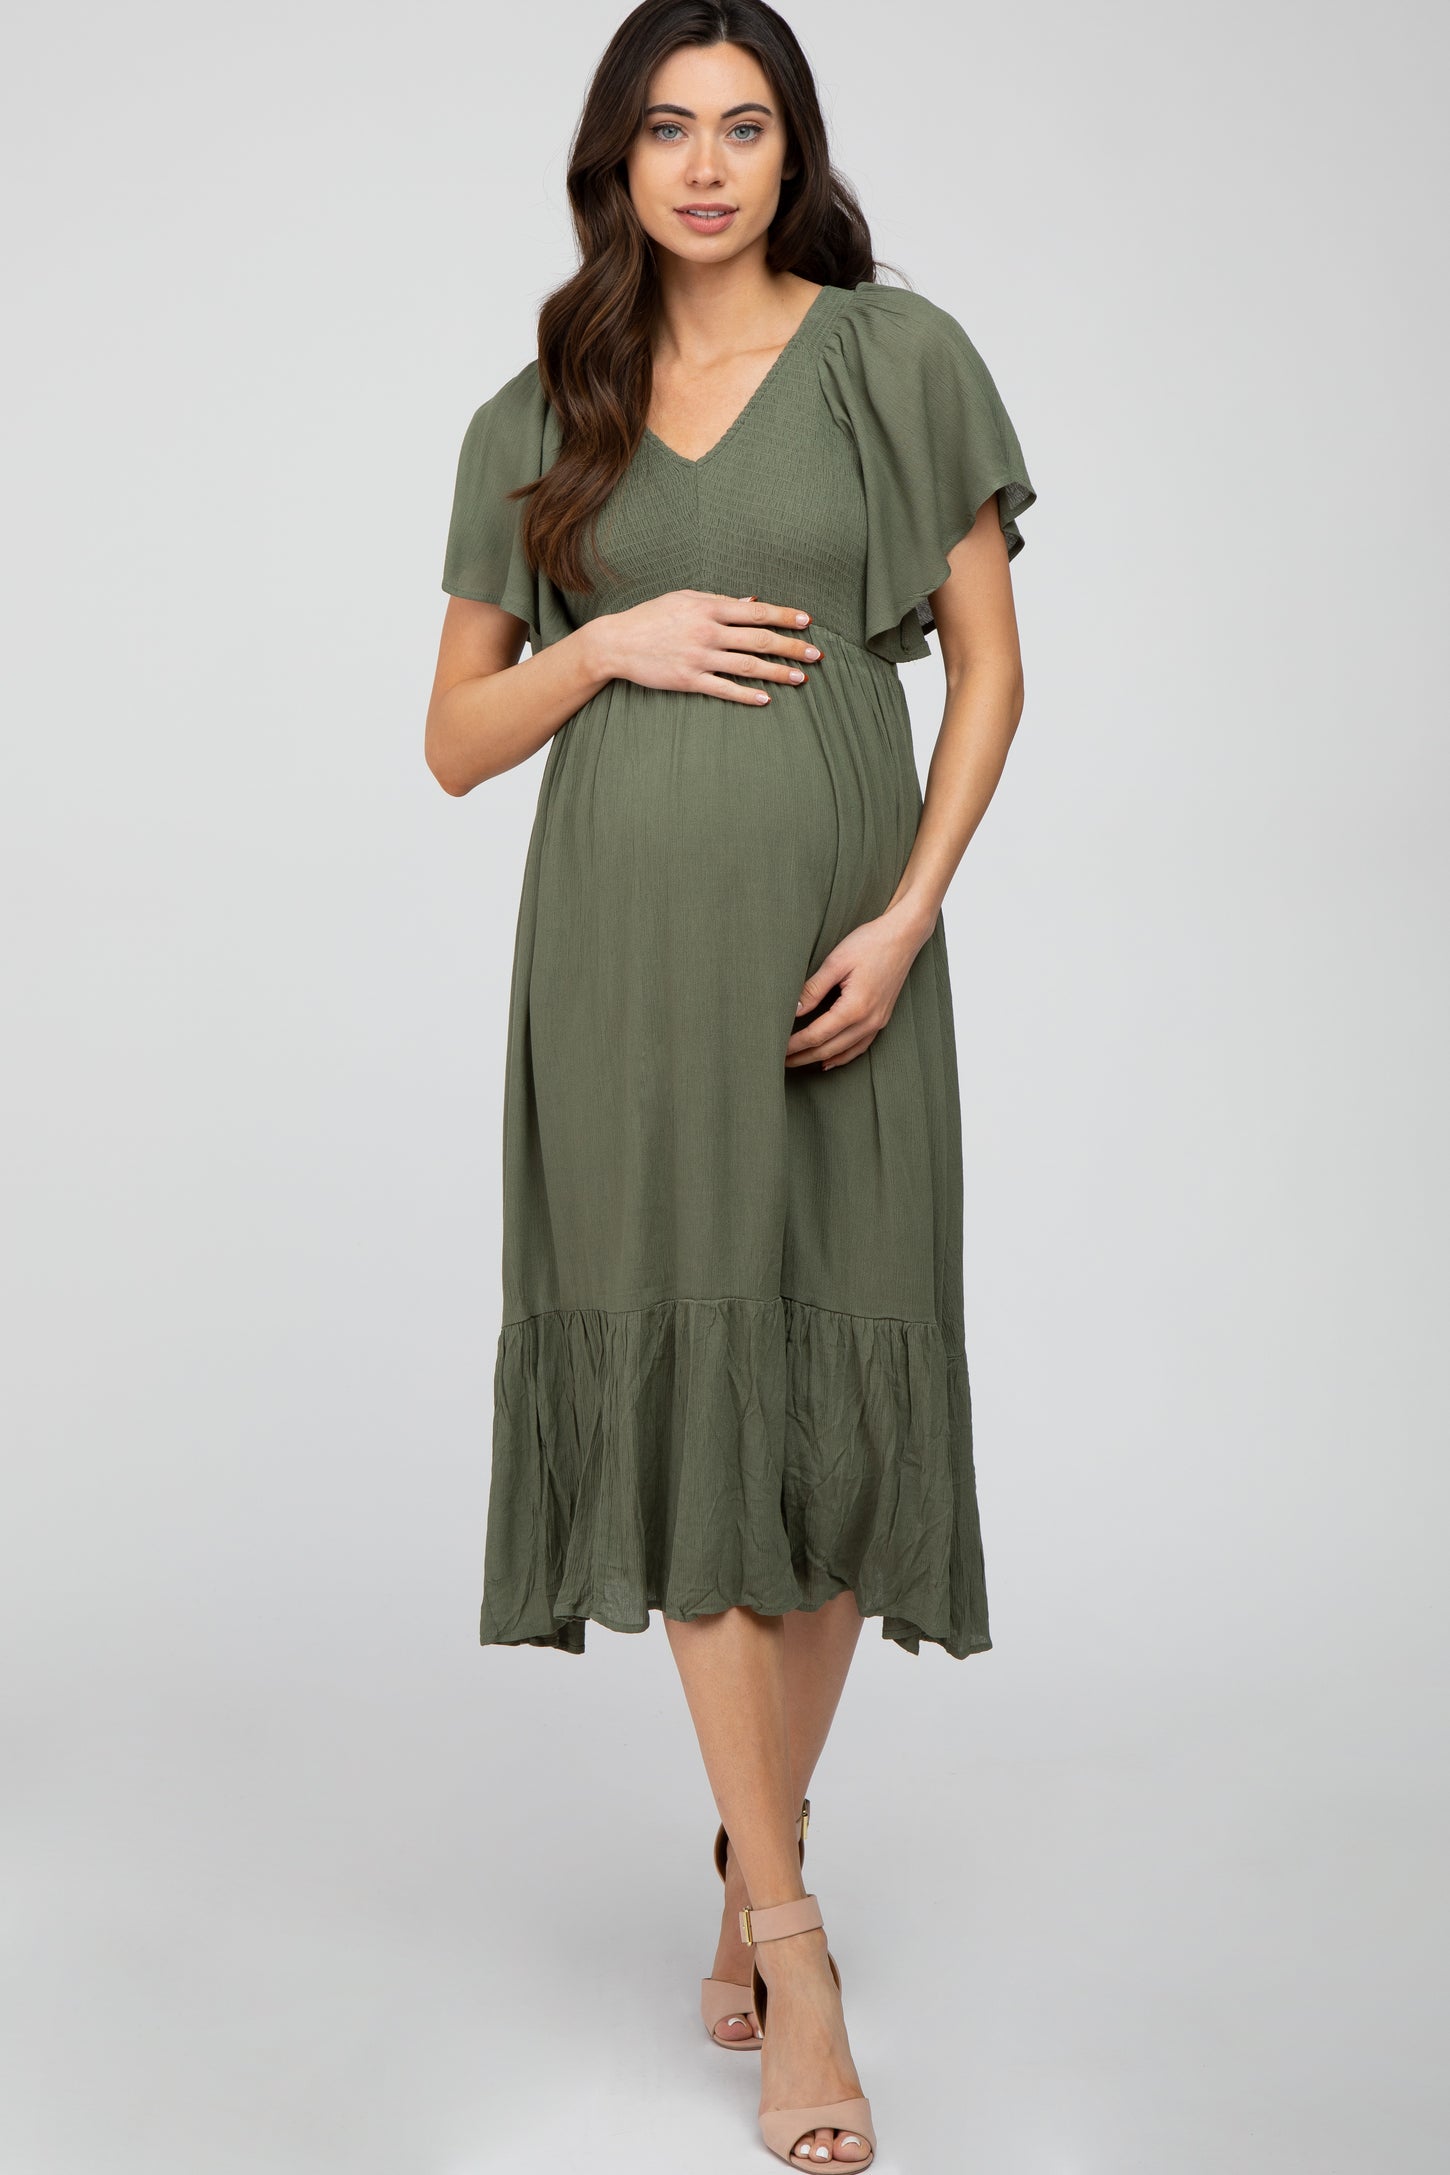 Olive Smocked Ruffle Maternity Dress